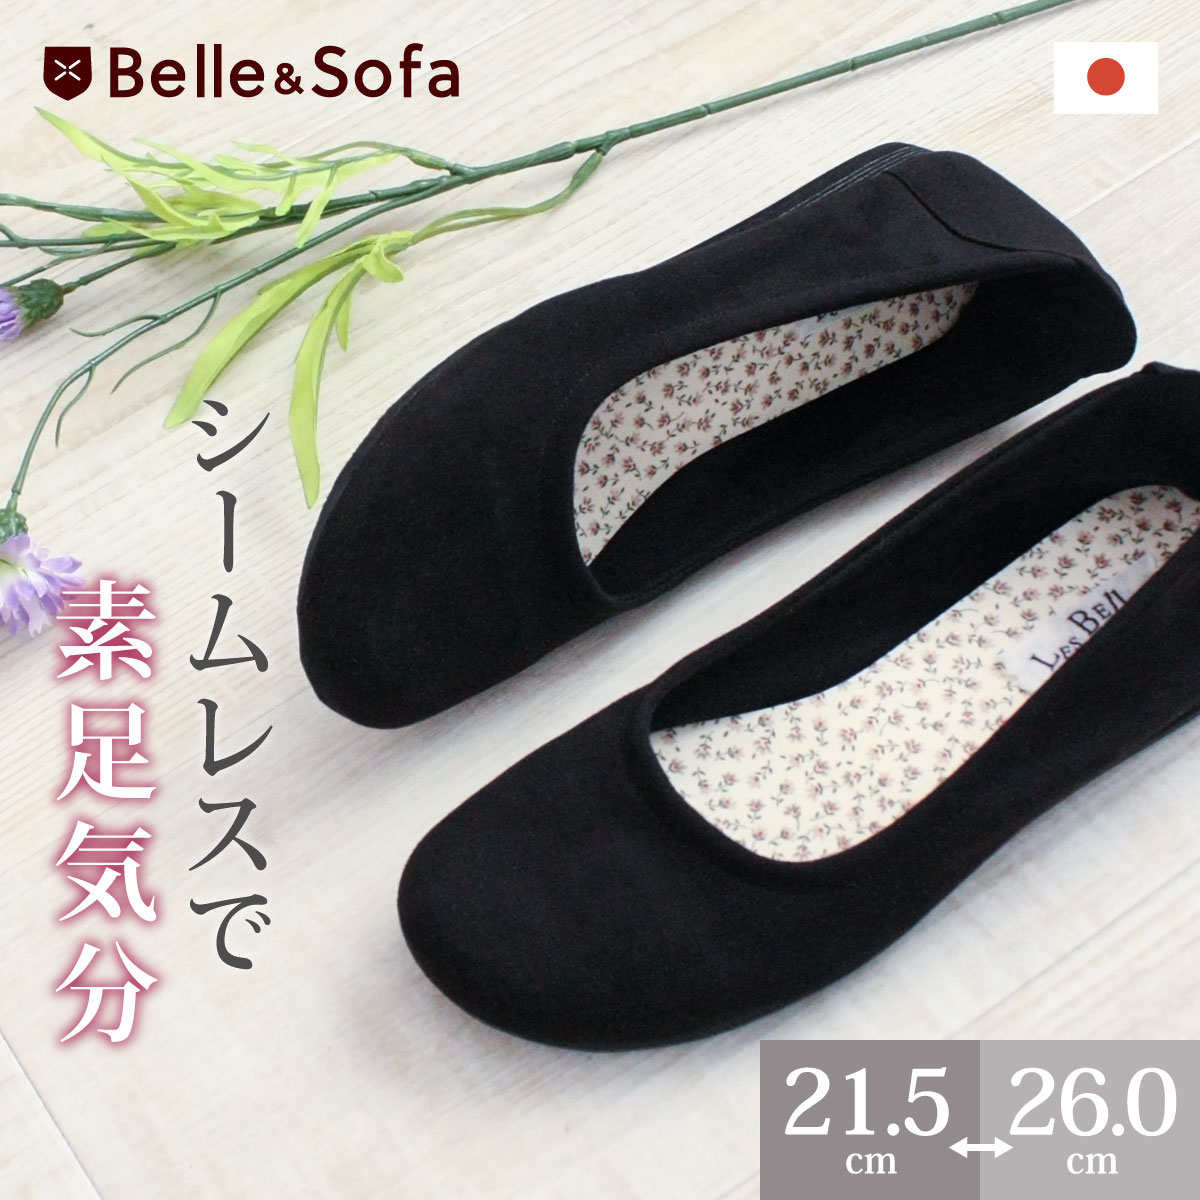 バレエシューズ パンプス スエード フラットシューズ ローヒール 歩きやすい 疲れにくい 痛くない 靴 日本製 A0646